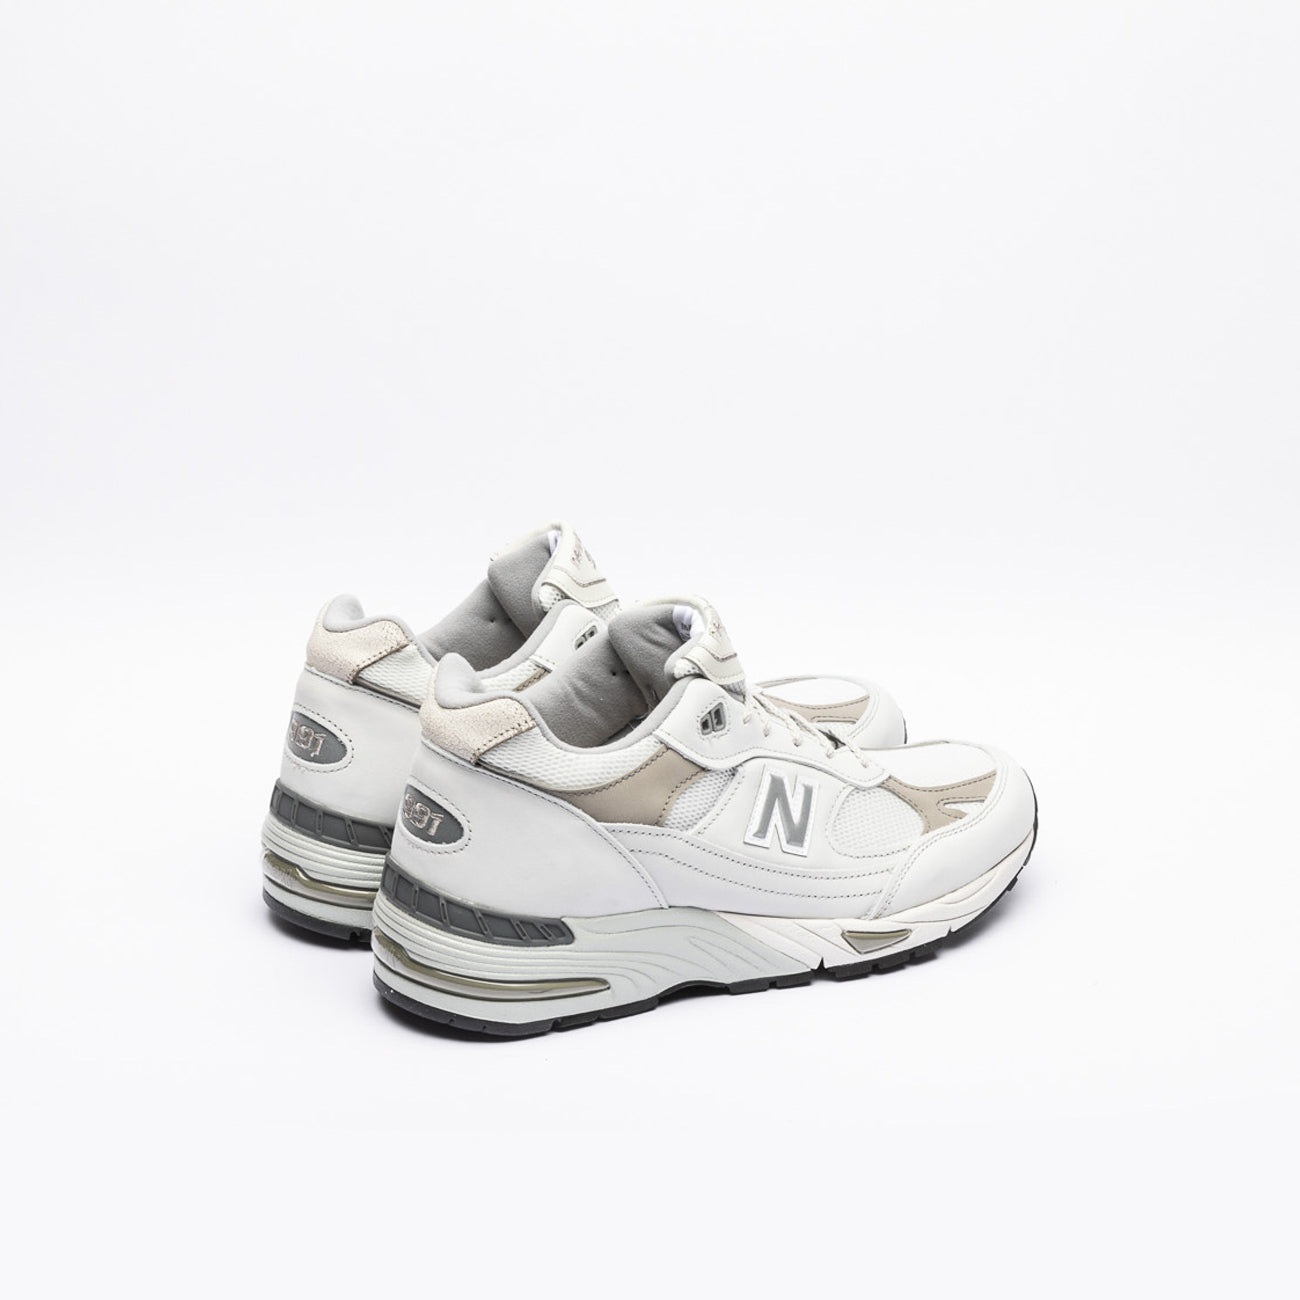 Sneaker New Balance 991v1 in nabuk bianco